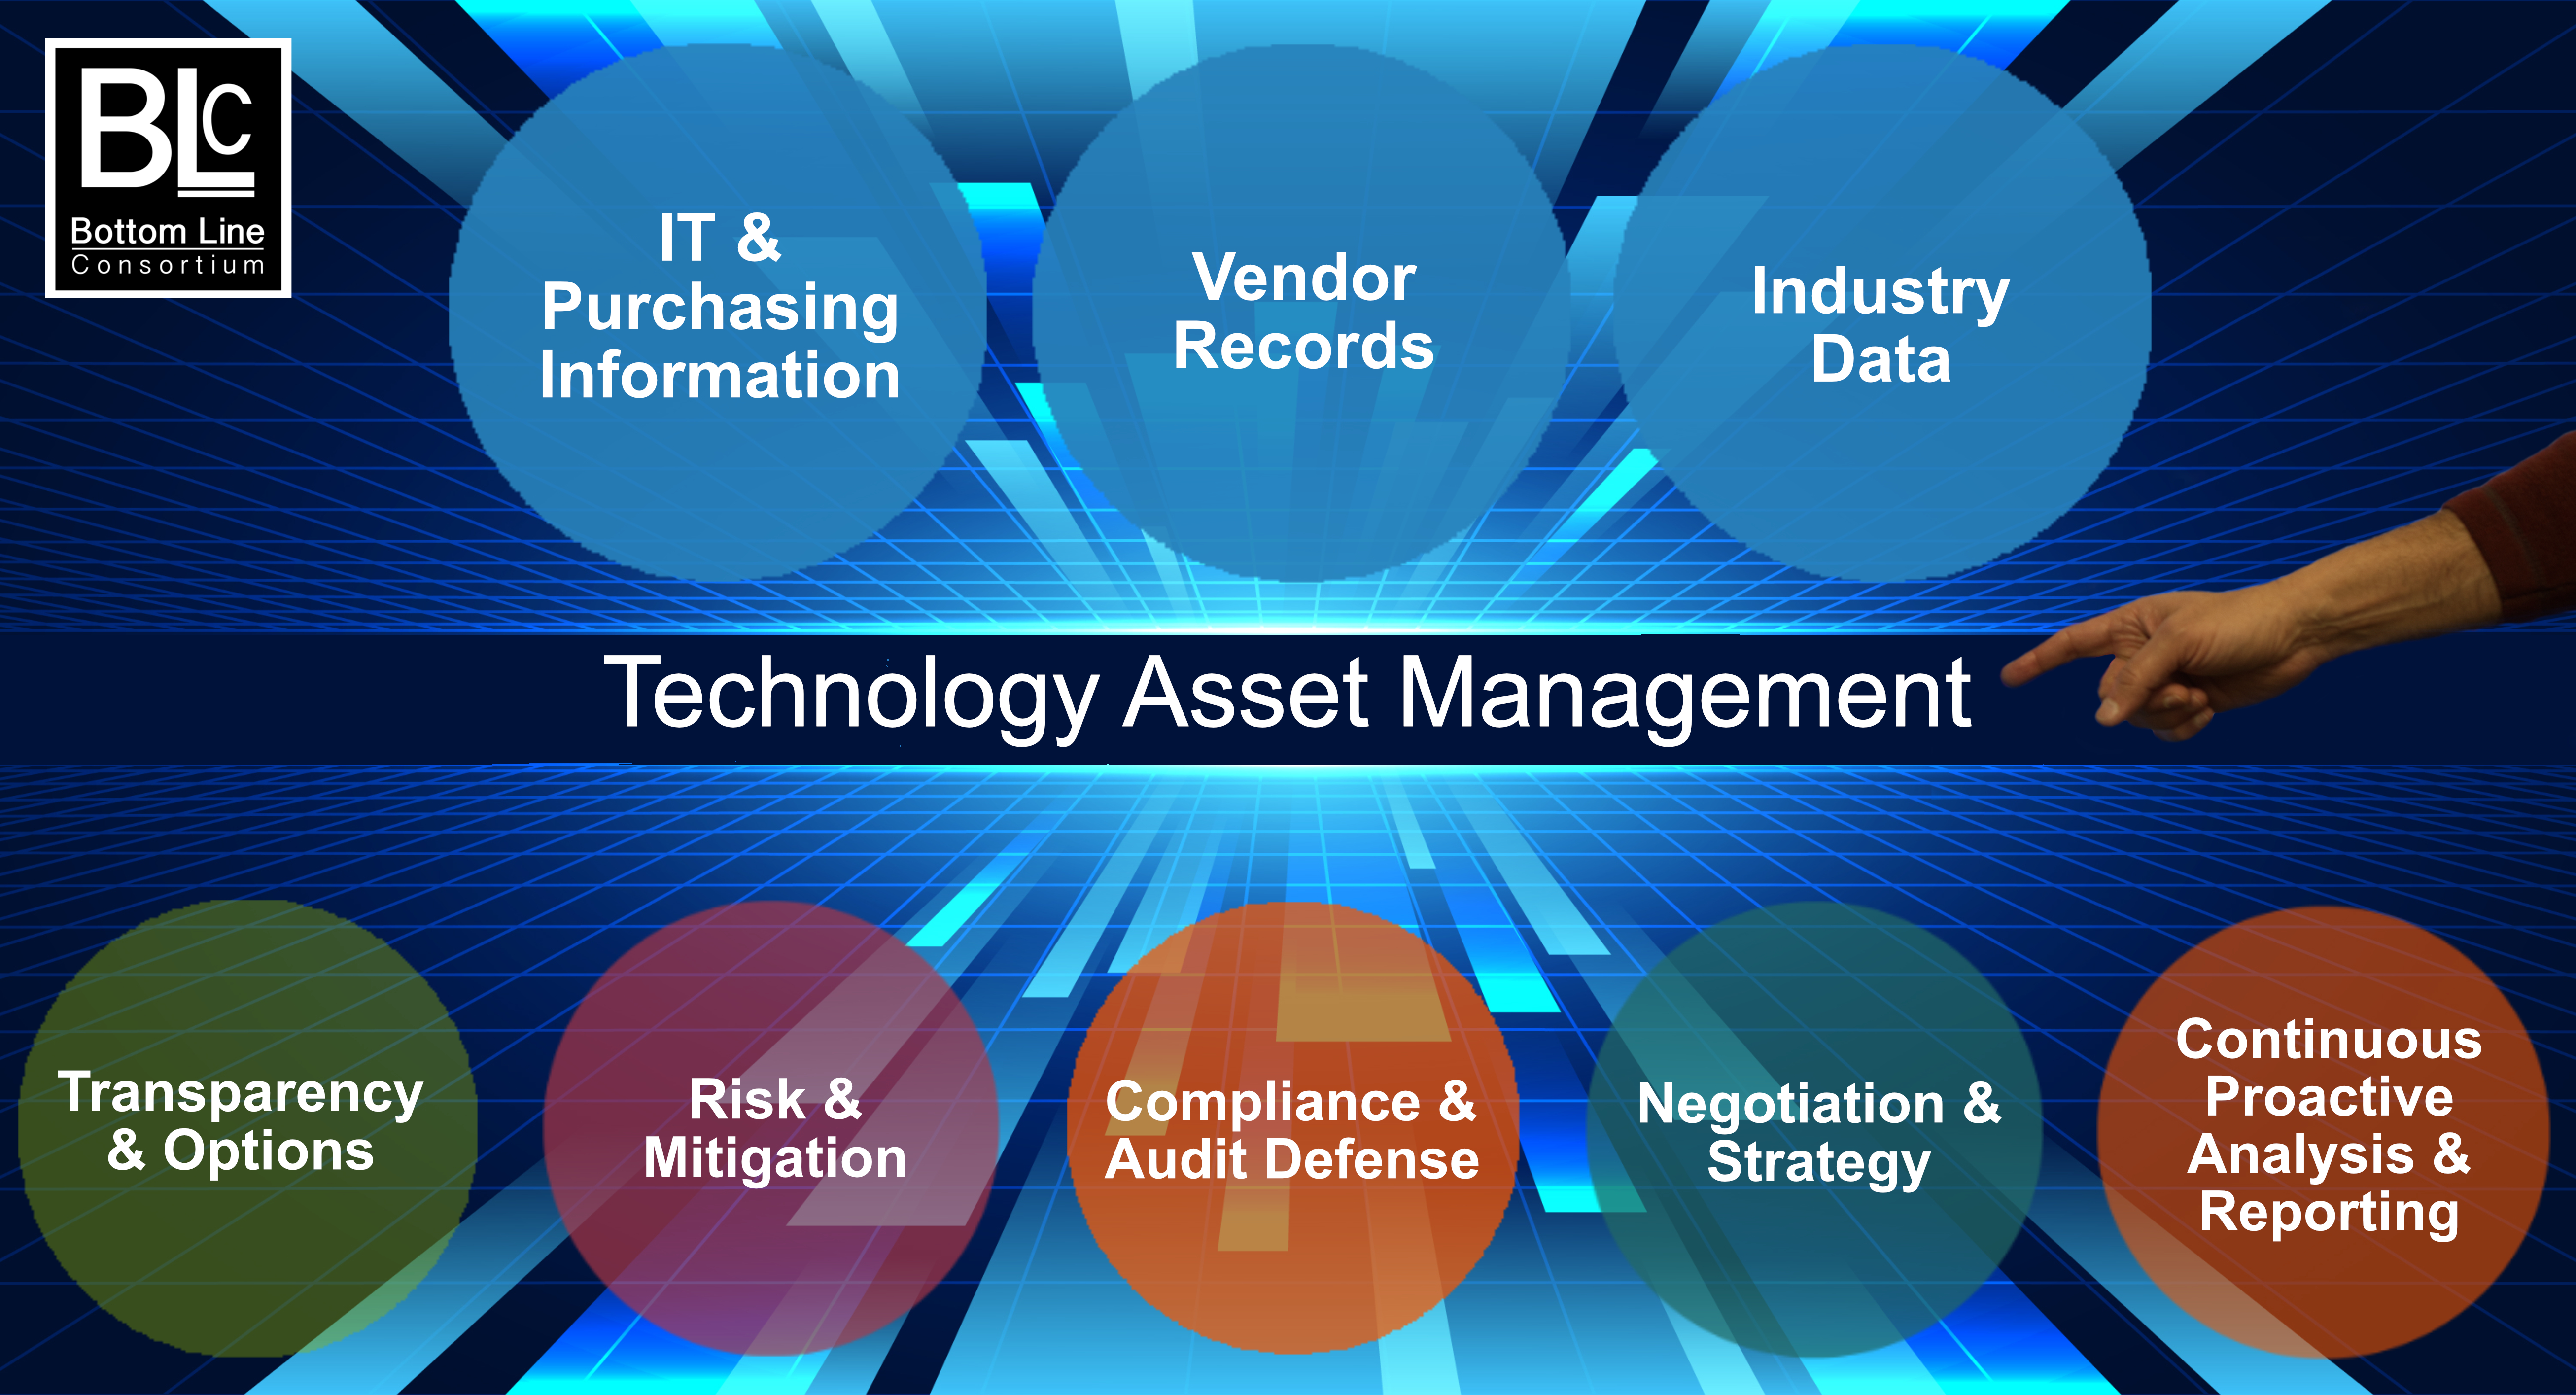 BLC Software Asset Management Service